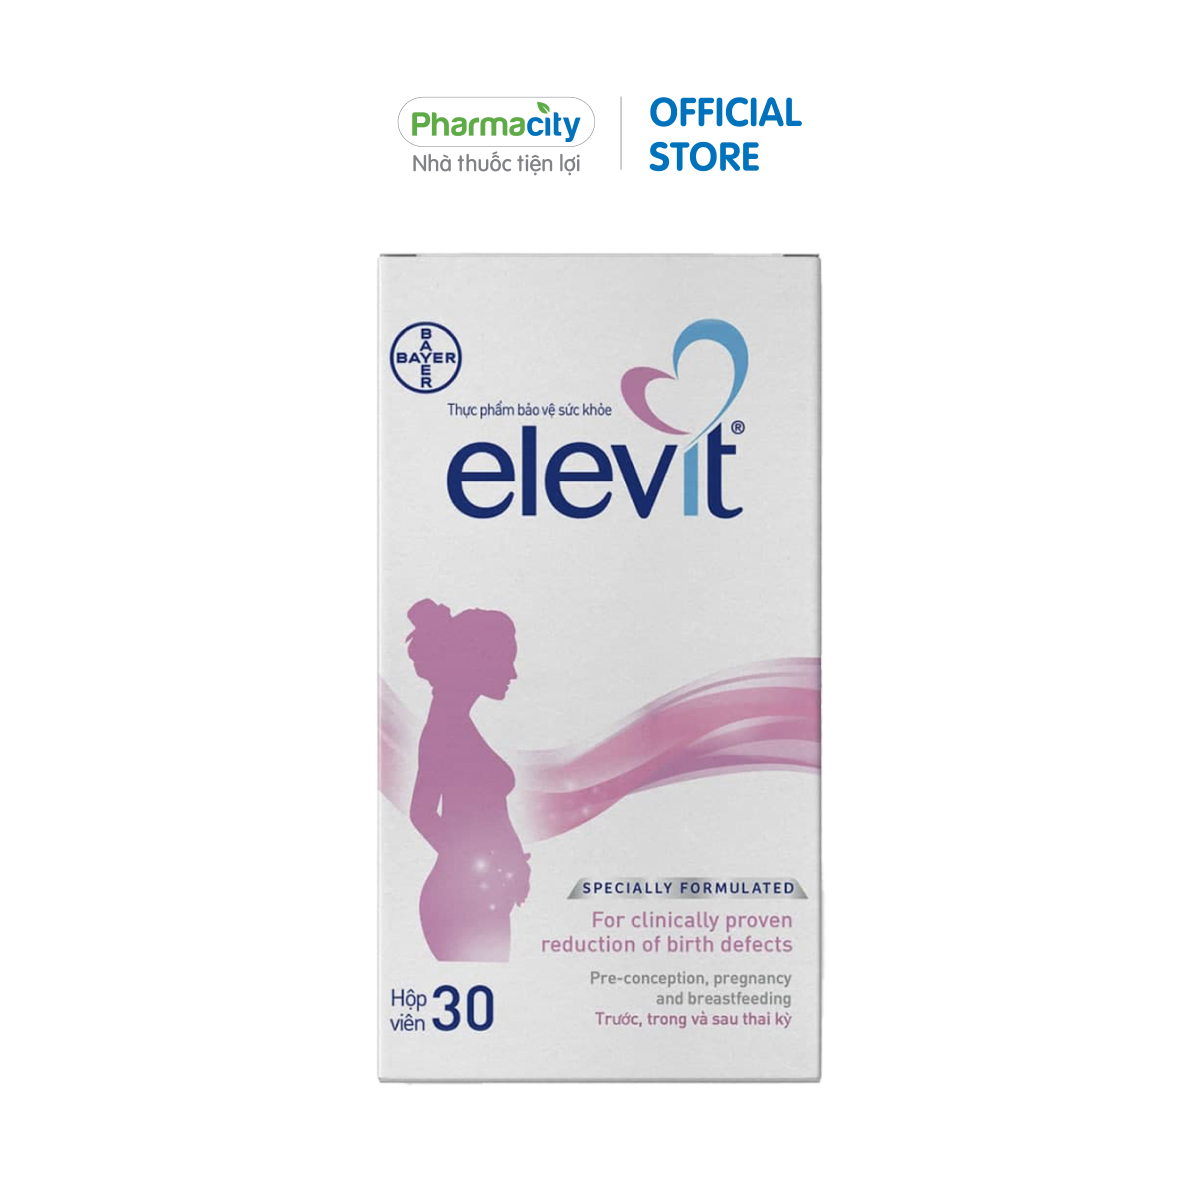 Viên bổ sung vitamin và khoáng chất cho bà bầu Elevit (Hộp 30 viên)